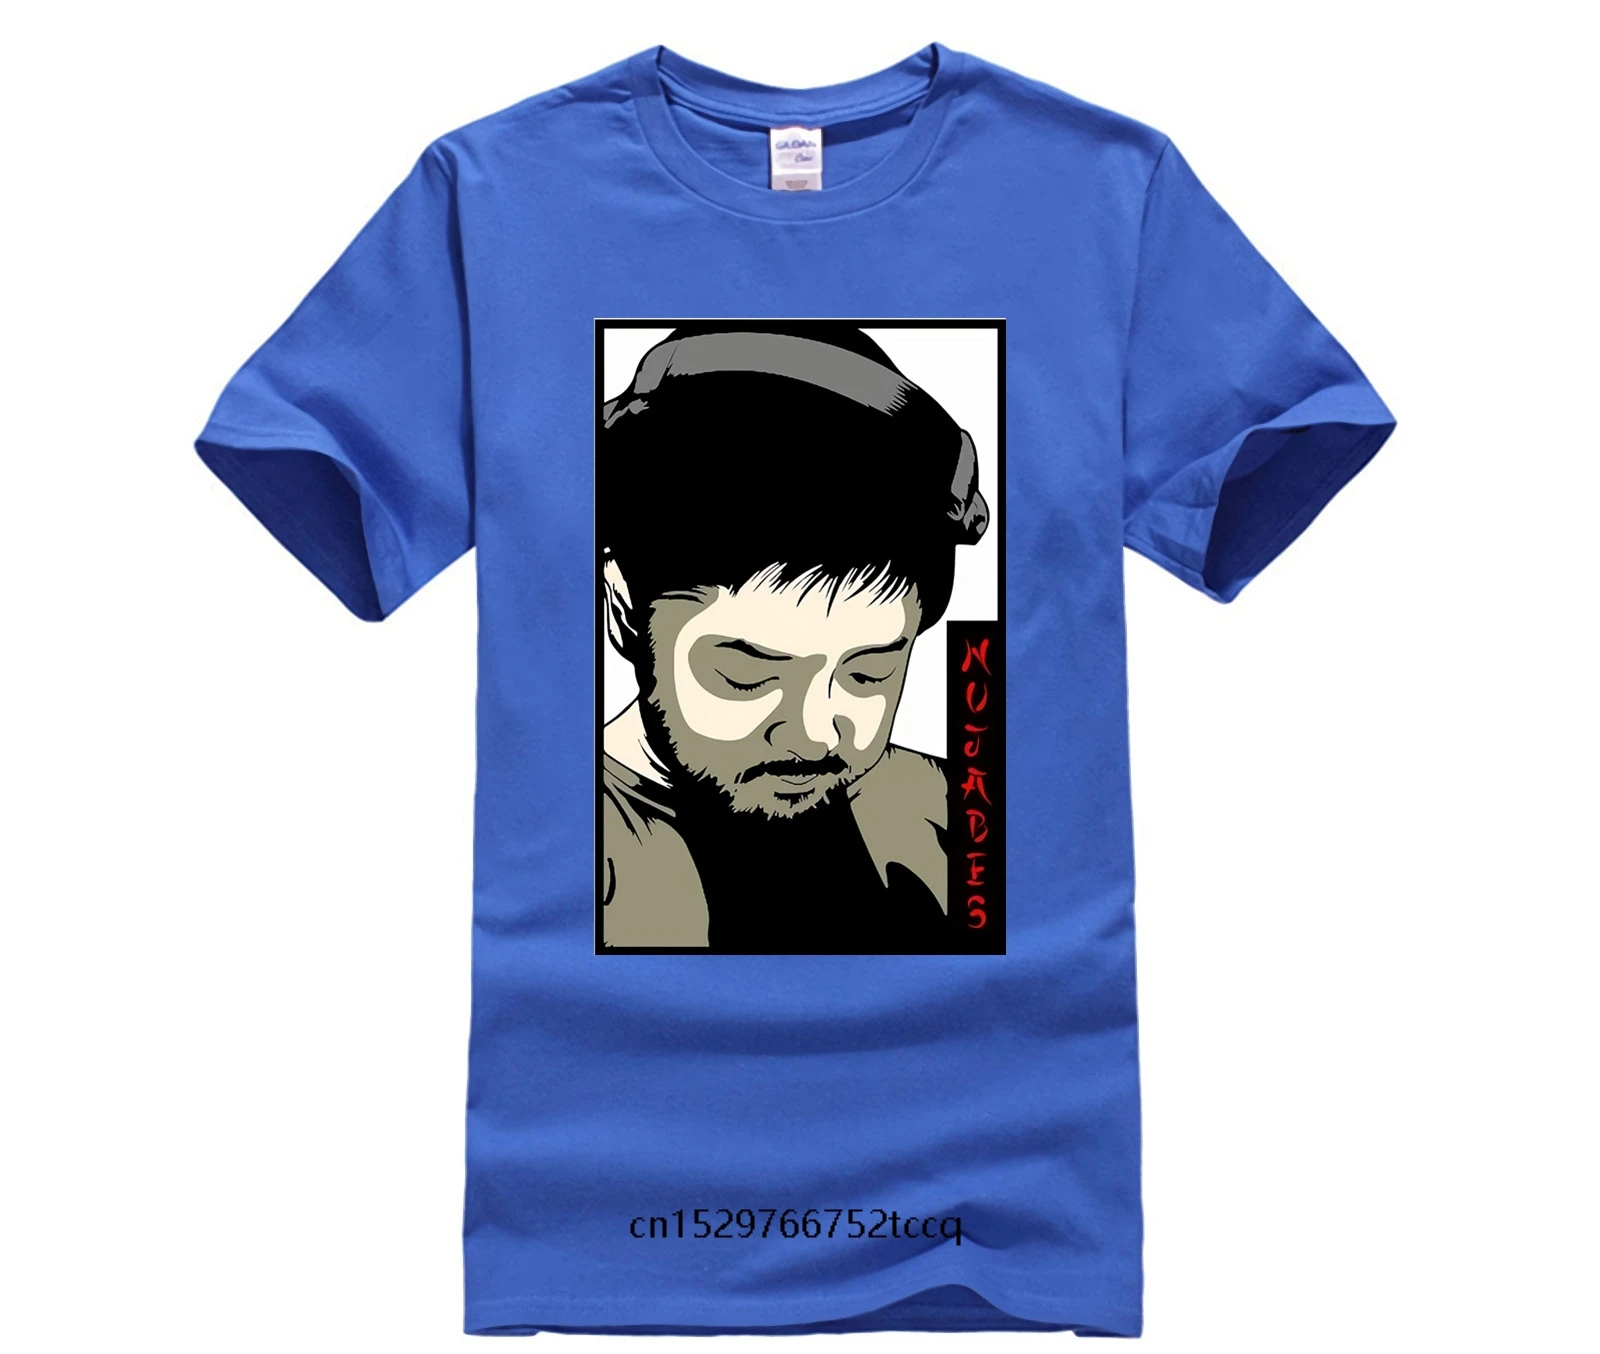 Мужская футболка Nujabes Jun Seba Underground хип хоп легендарный производитель забавная